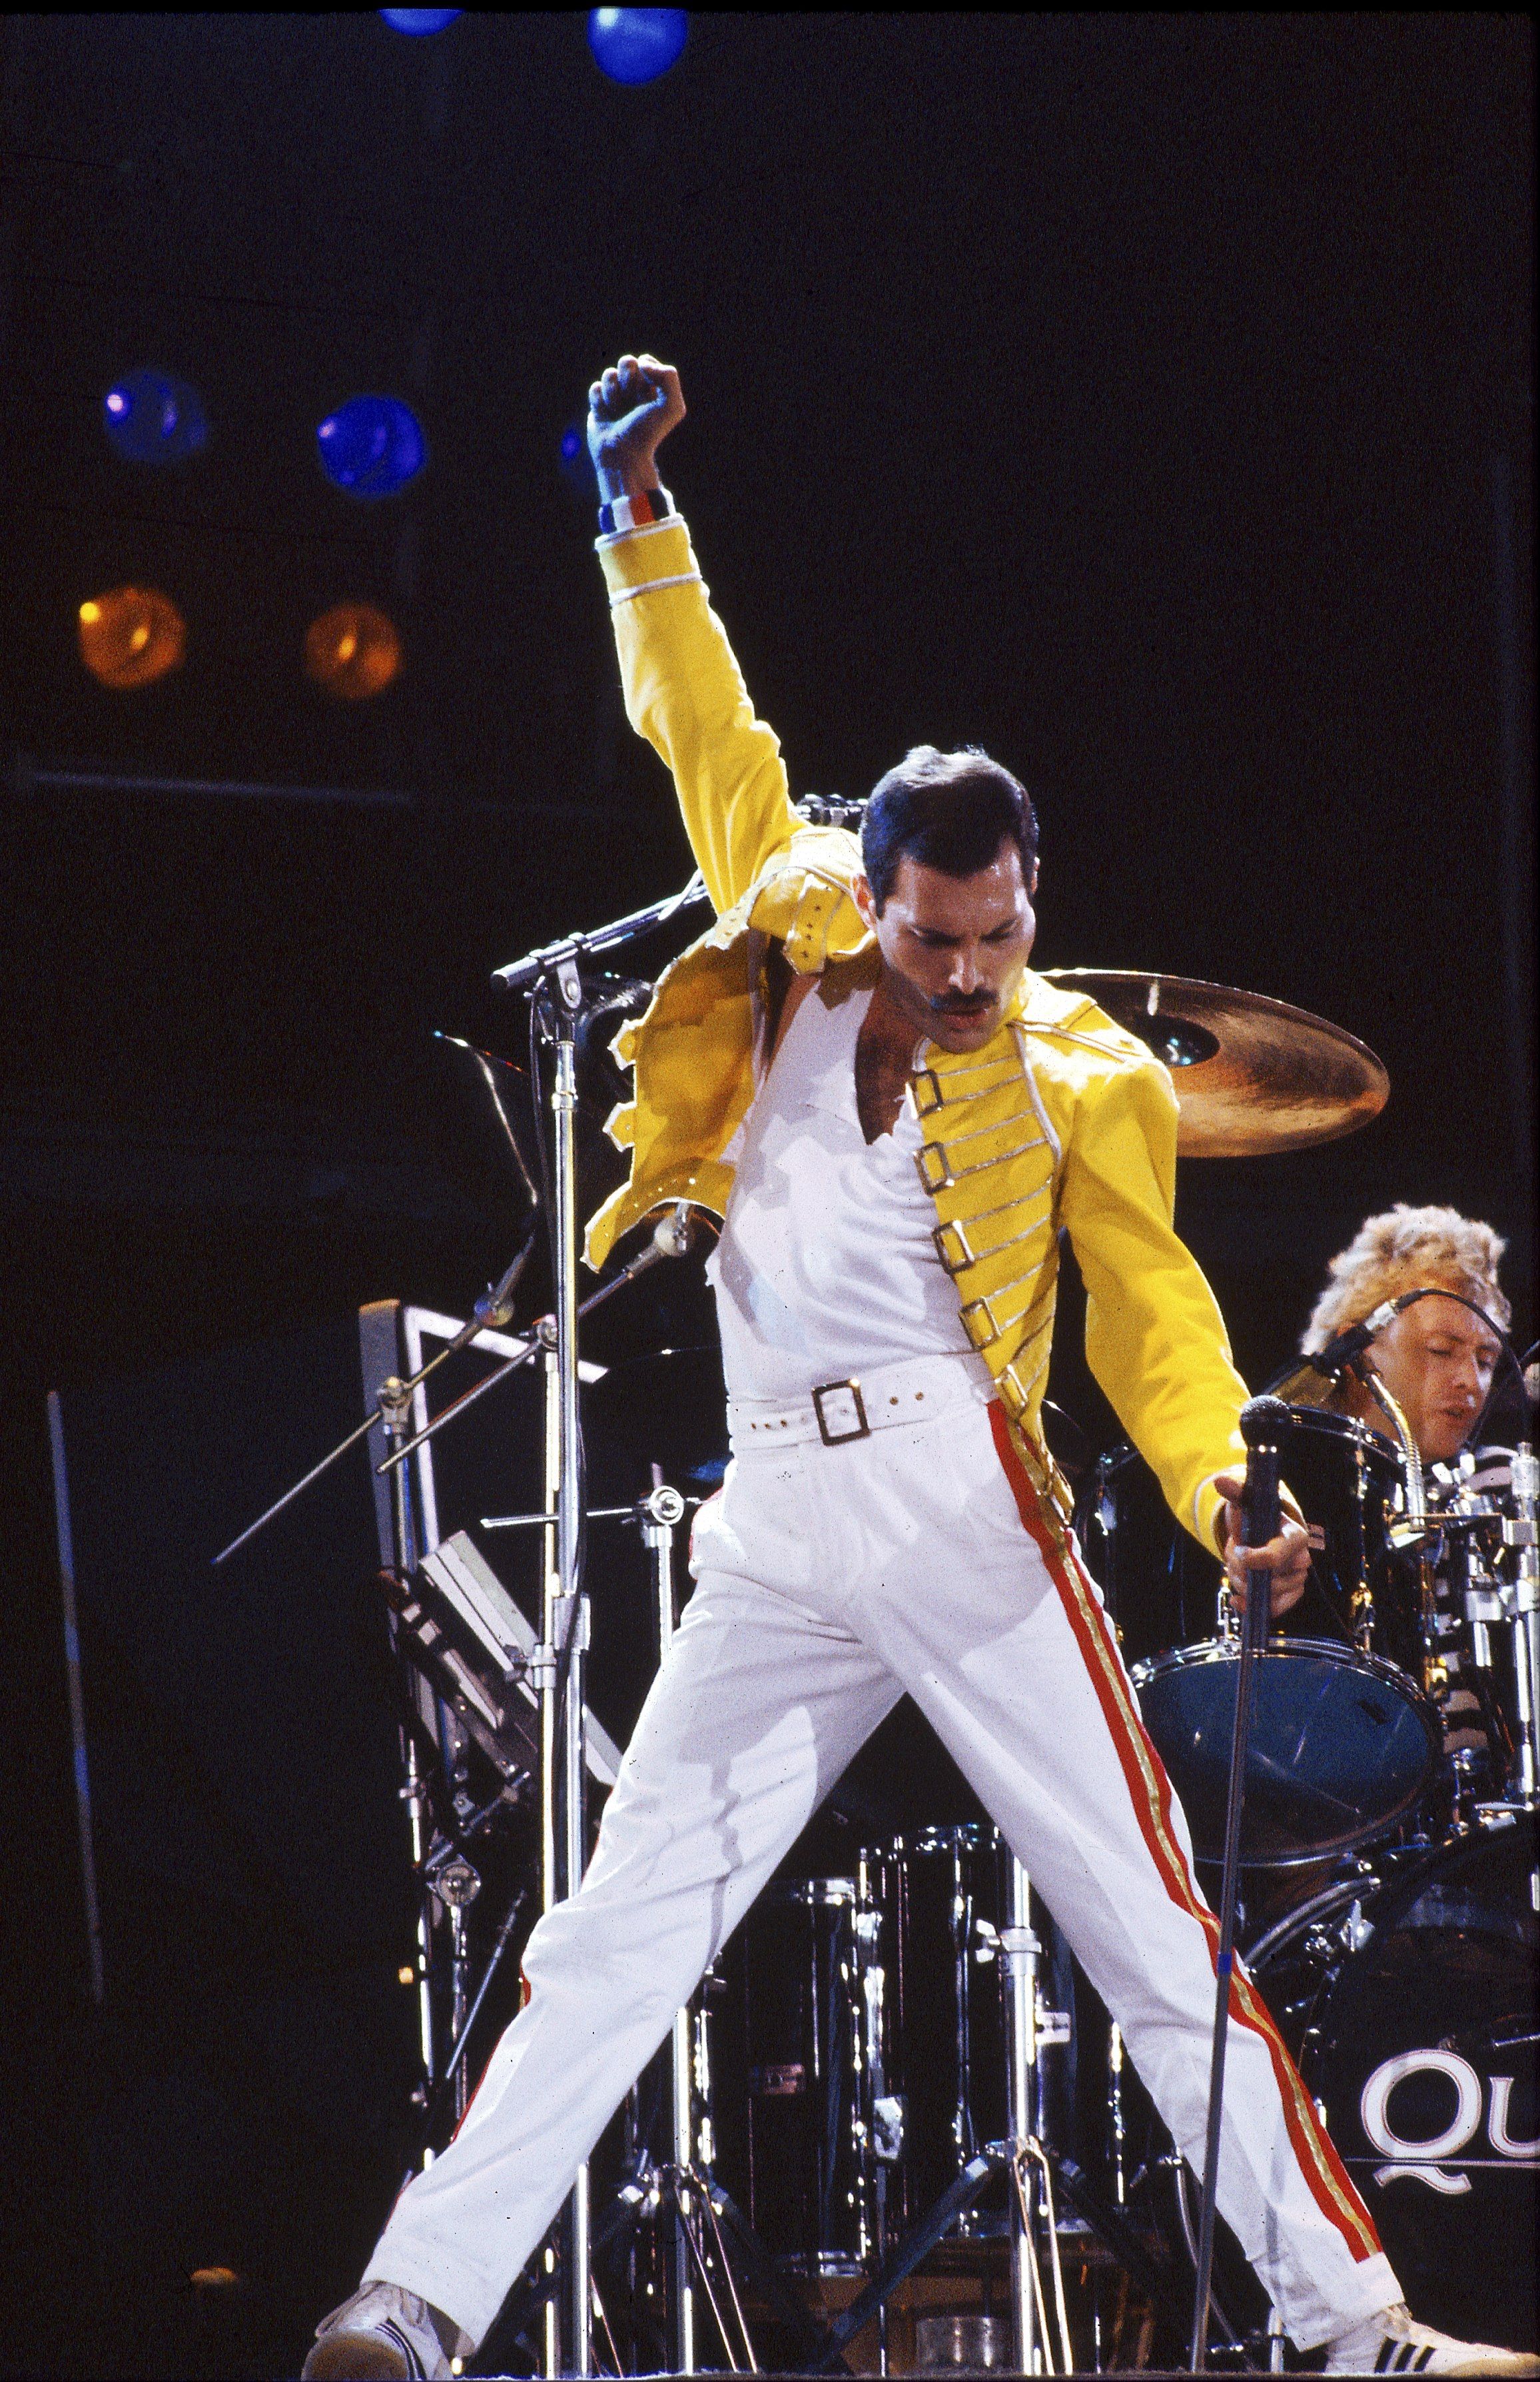 Freddie Mercury is not dead